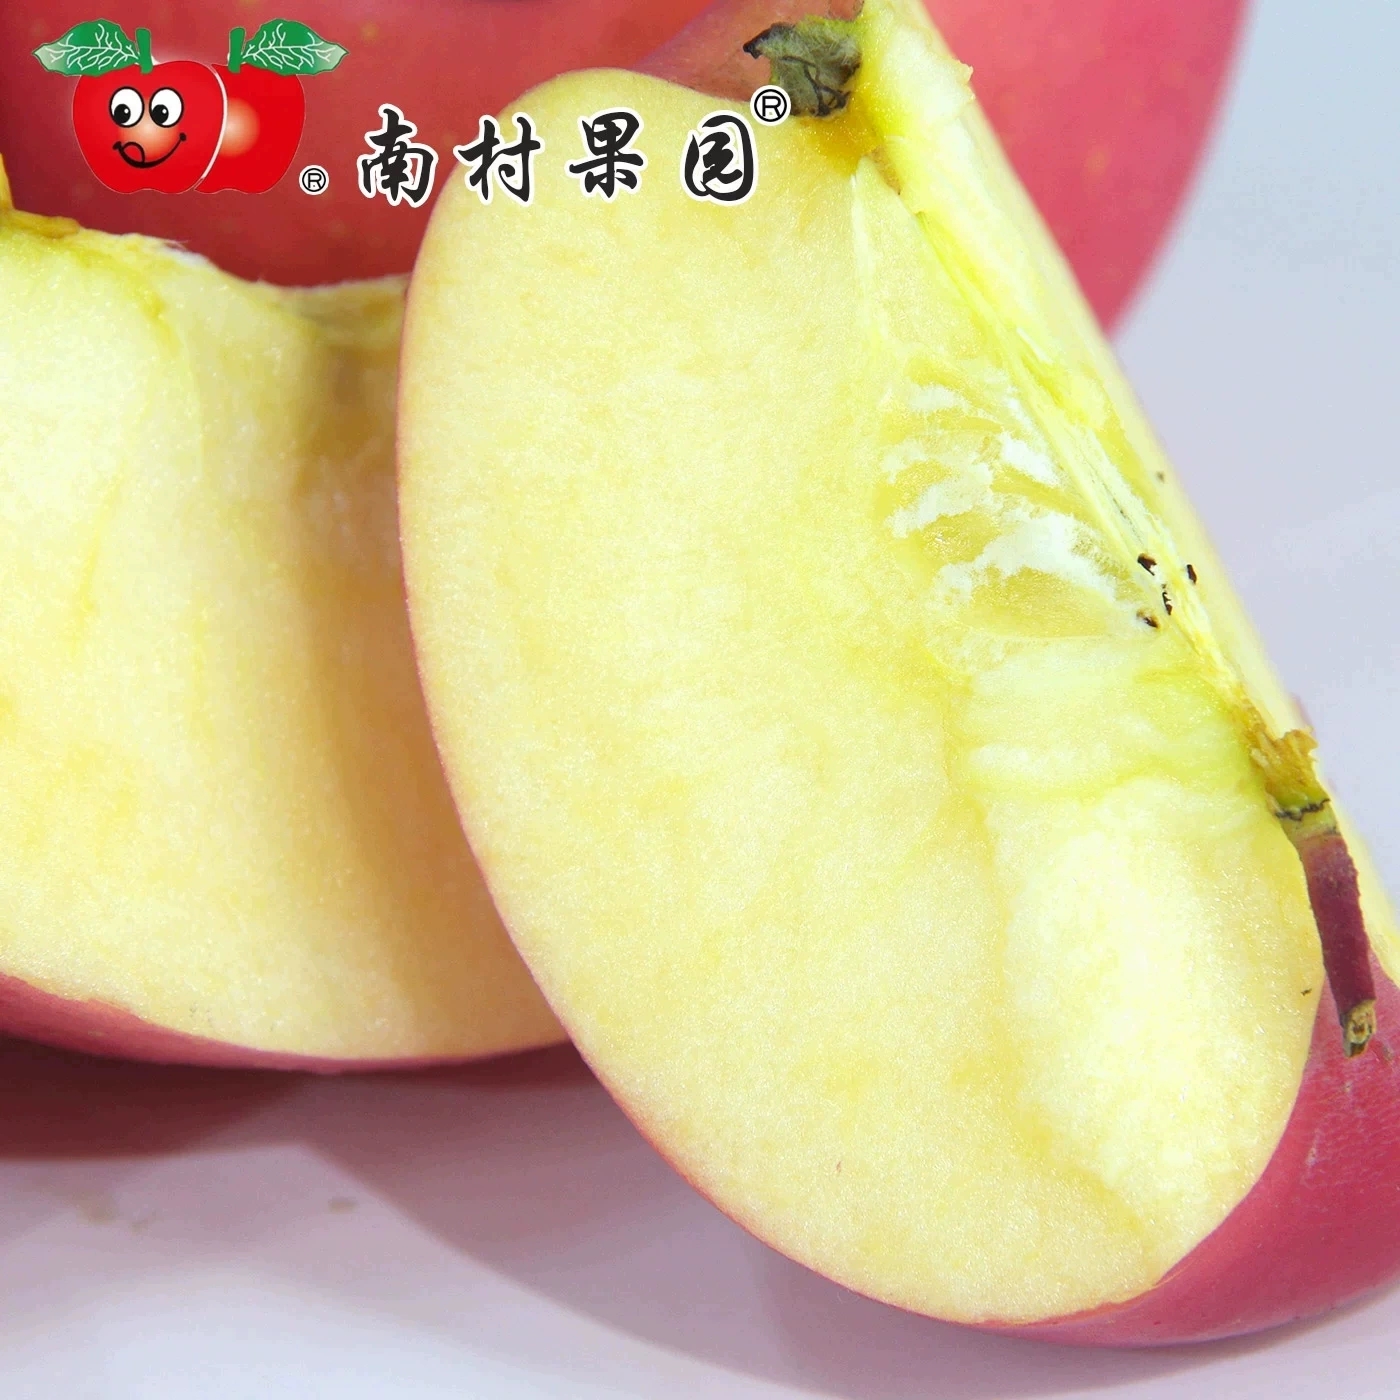 山东栖霞红富士大苹果DDD苹果9斤12个整箱烟台新鲜水果